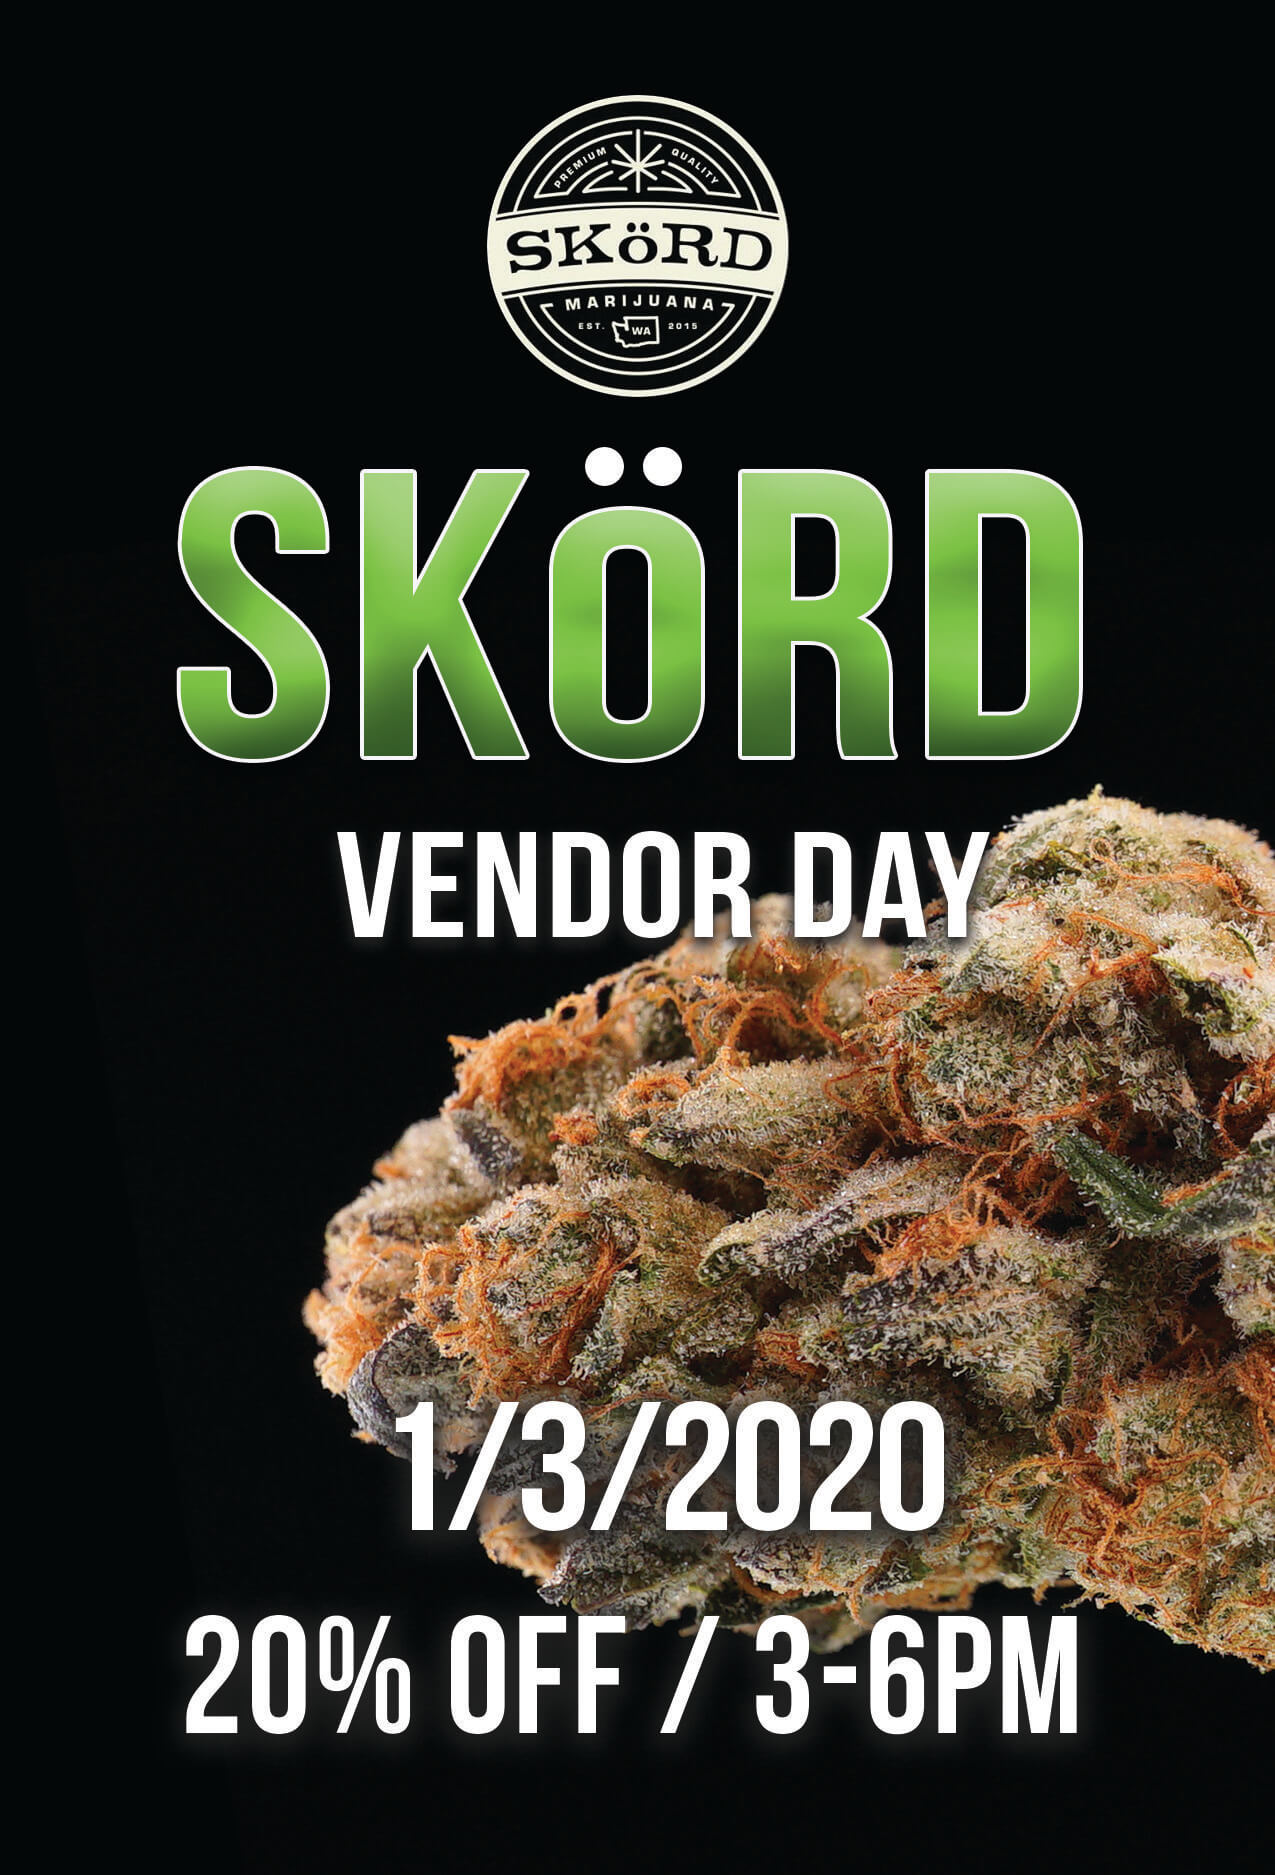 SKORD Vendor Day – 1/3/2020